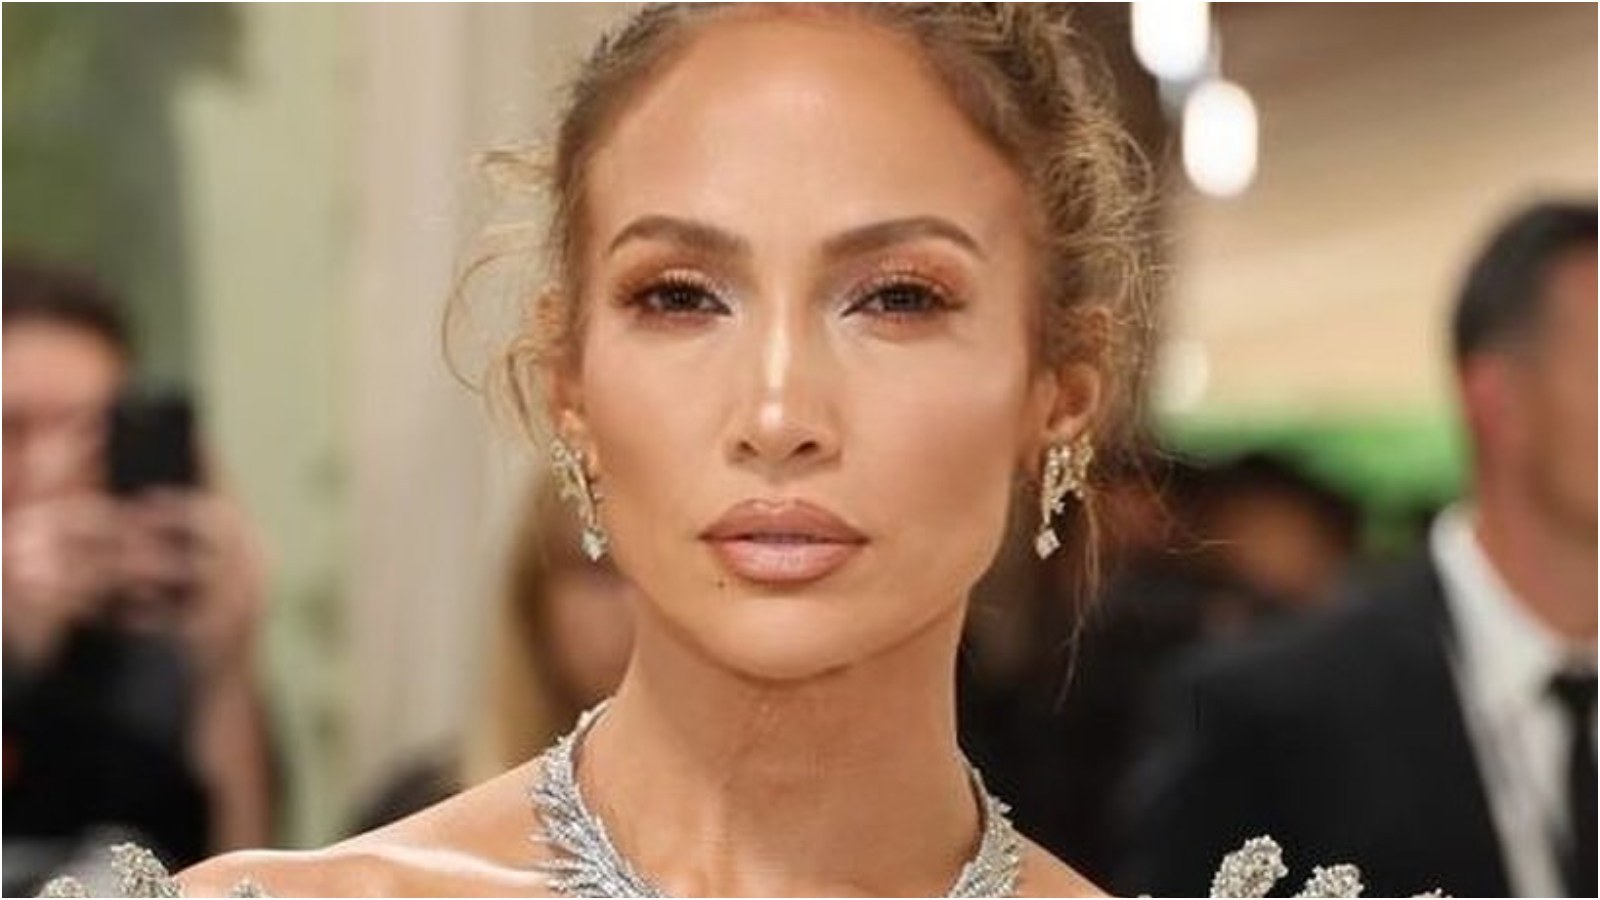 Jennifer Lopez sobe o tom ao ser questionada sobre crise no casamento com Ben Affleck